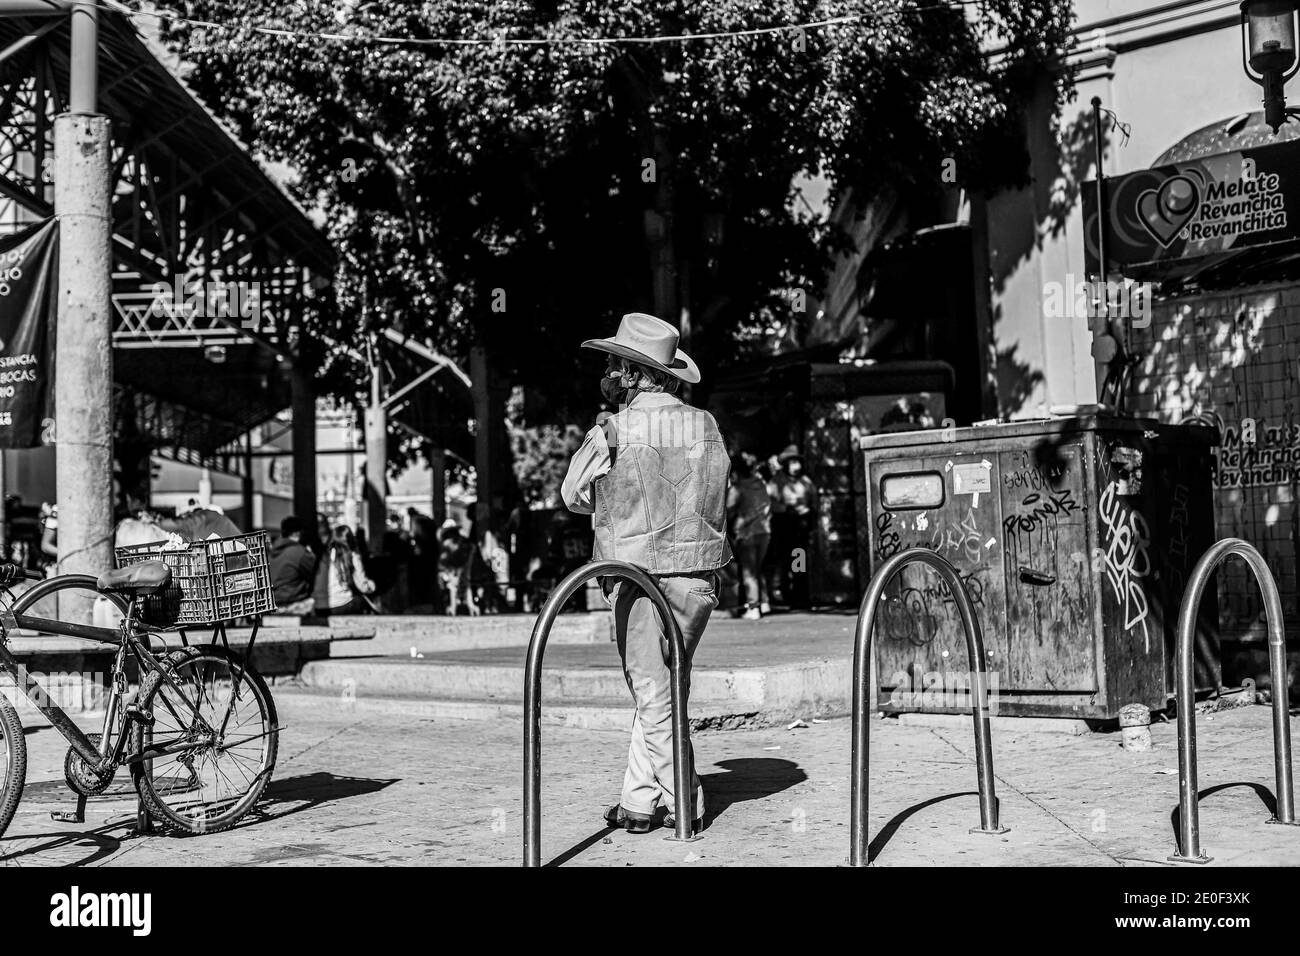 HERMOSILLO, MEXICO DECEMBER 31: A cowboy in a fur vest and hat rests leaning against the bicycle parking meter at the entrance to the Hermosillo Municipal Market. Daily life of beautiful people in the streets of the city center during the last day of the year, on December 31, 2020 in Hermosillo, Mexico .. (Photo by Luis Gutierrez / Norte Photo)  HERMOSILLO, MEXICO DICIEMBRE 31: Un vaquero con chaleco de piel  y sombrero descansa recargado en el parquimetro de bicicletas en la entrada del Mercado Municipal de Hermosillo. Vida cotidiana de hermosillences en las calles del centro de la ciudad dur Stock Photo